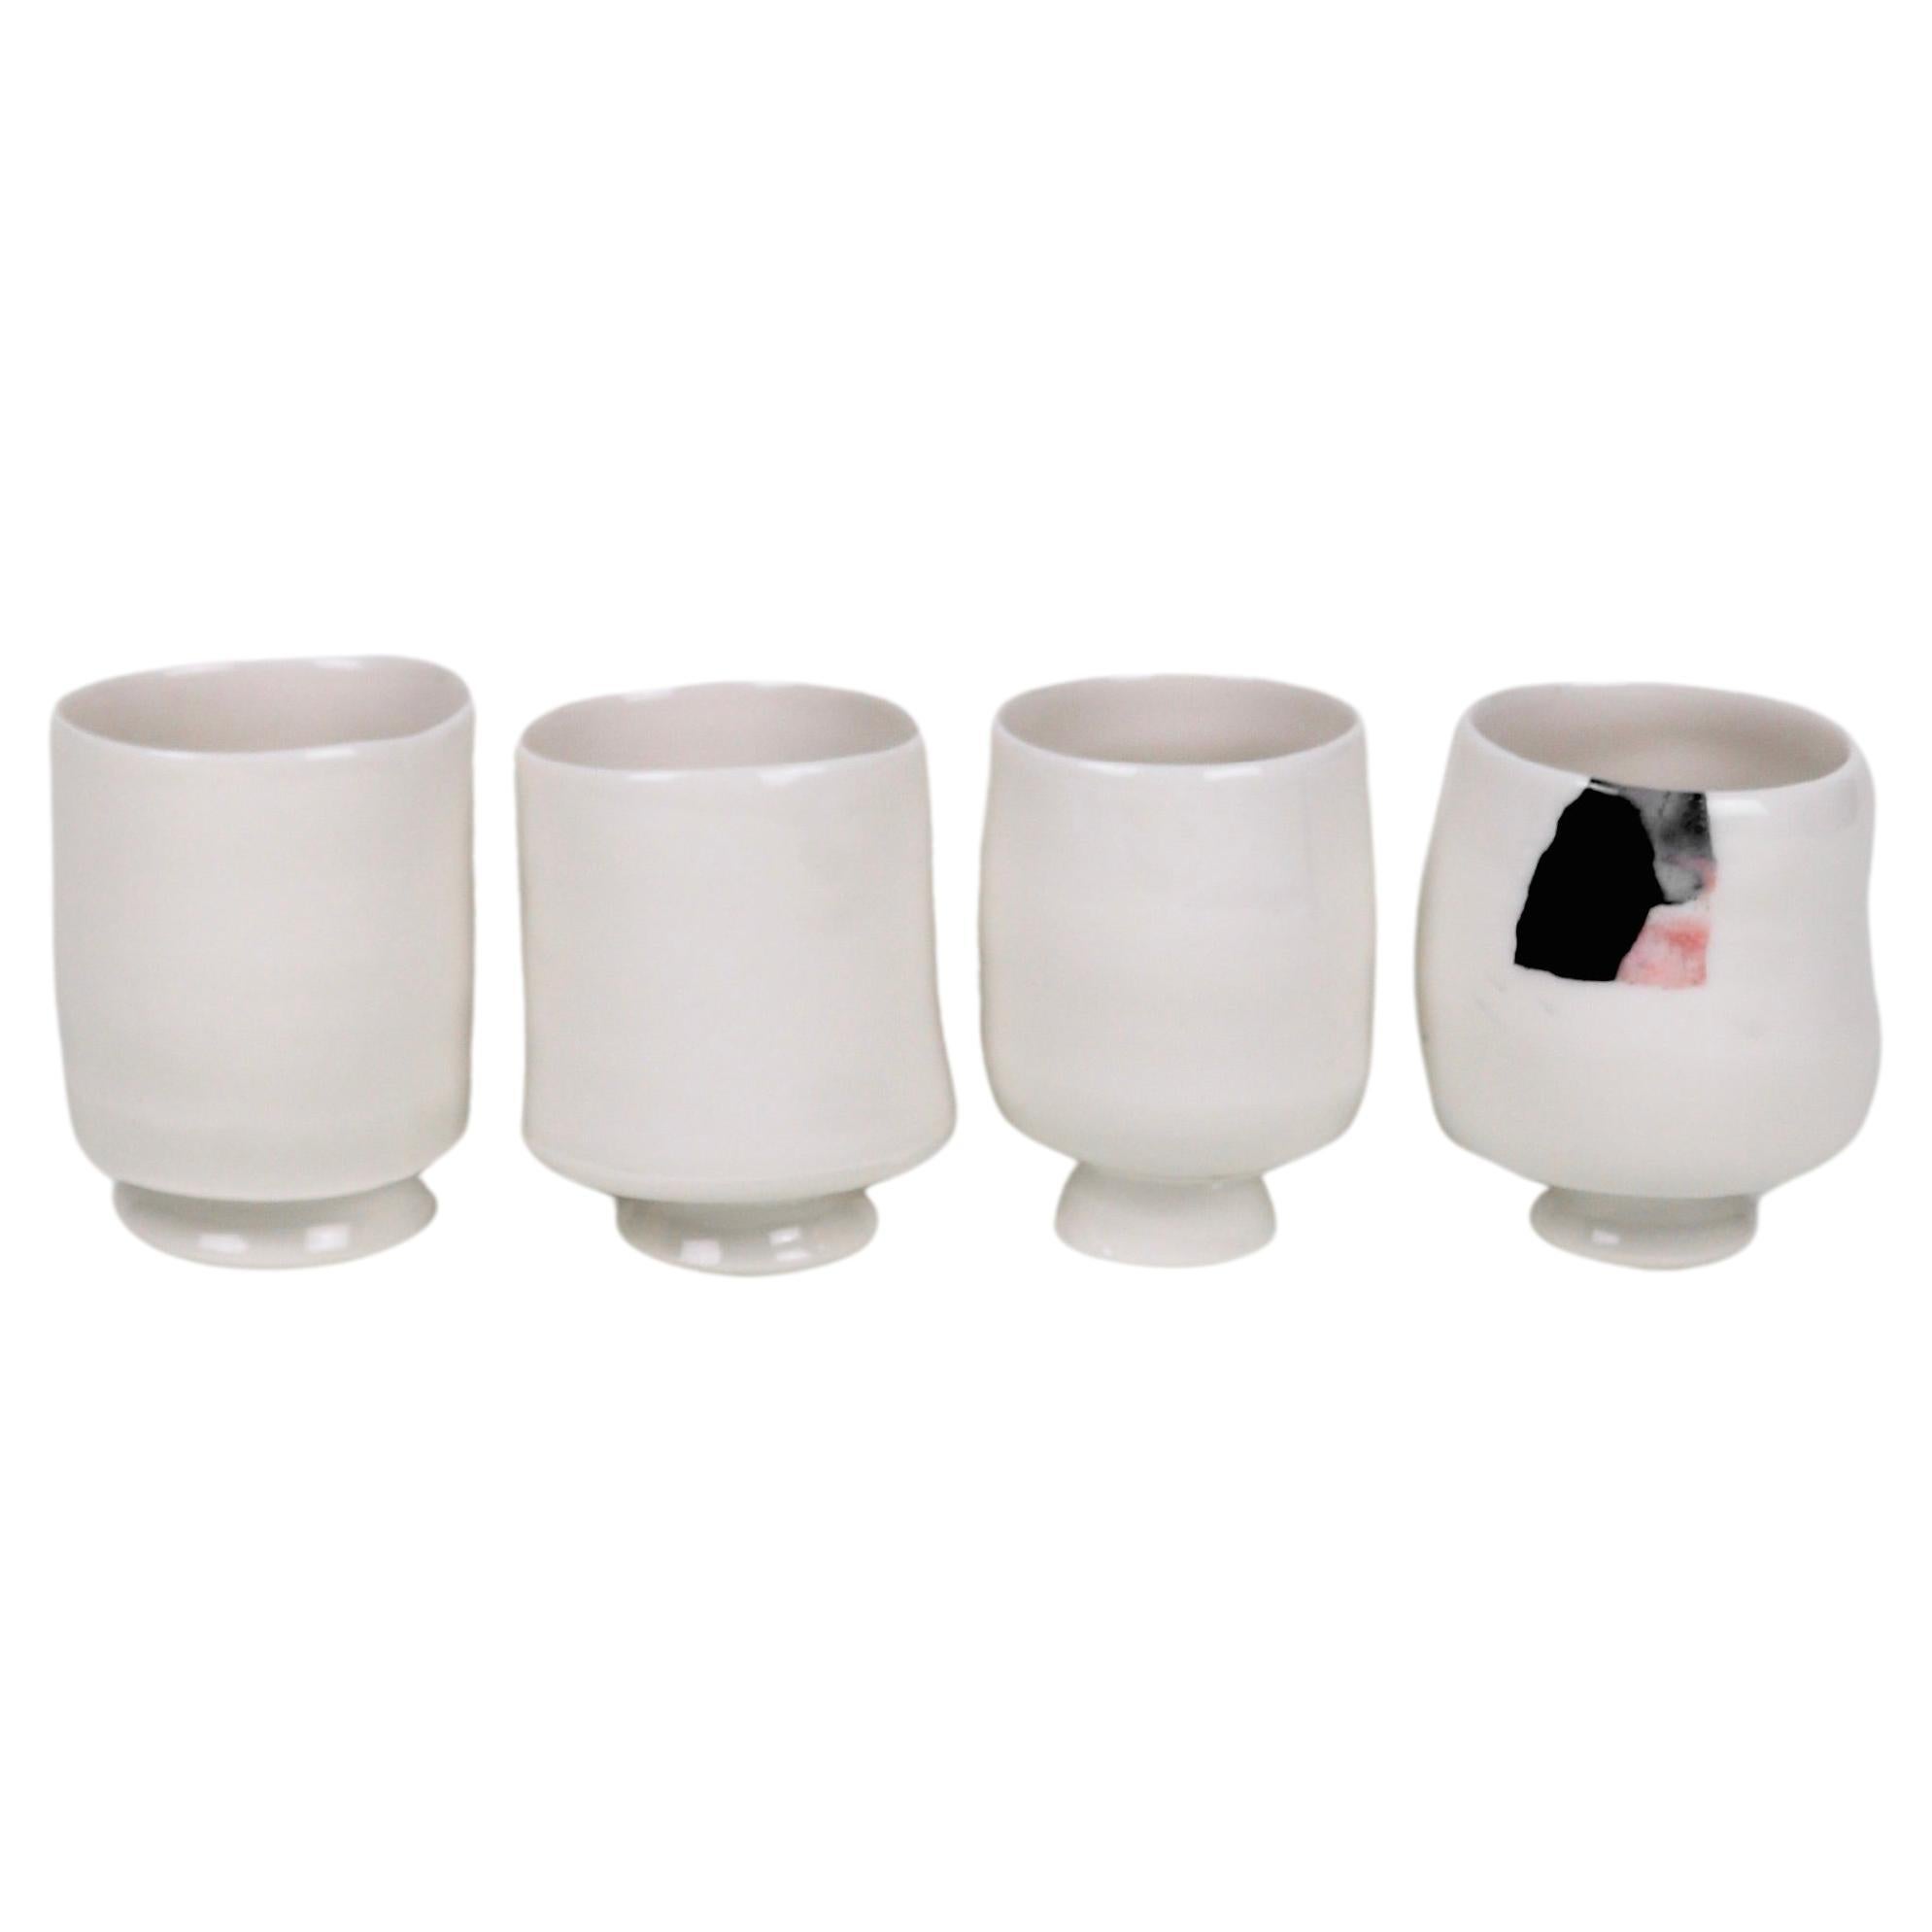 Ashley Howard Porcelain Cup Set For Sale